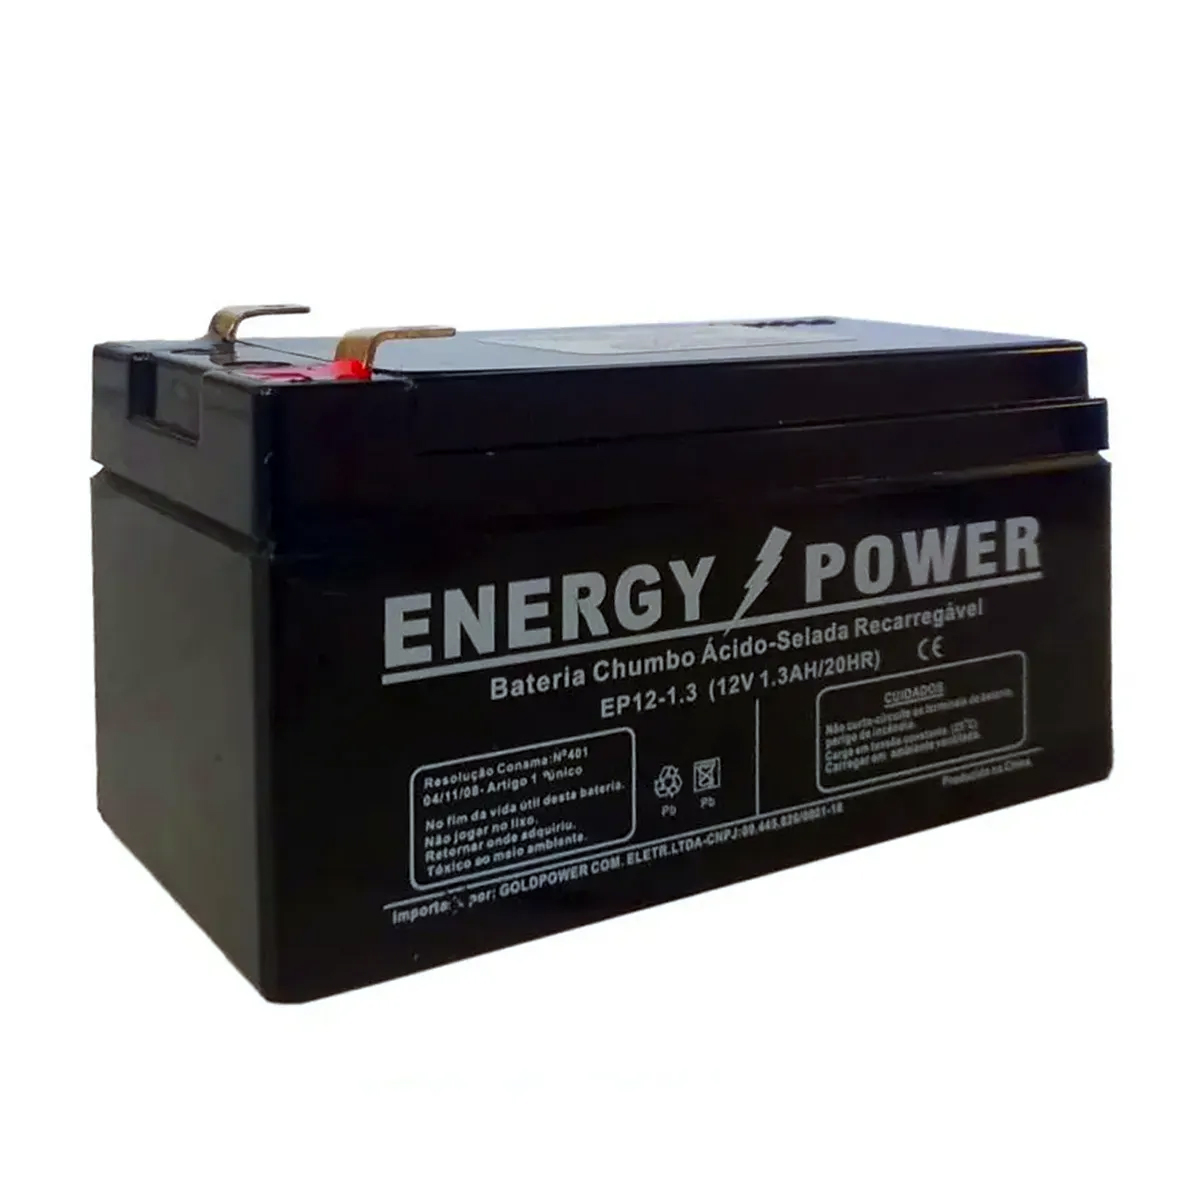 Kit Central de Alarme 6 laços com 12 volts com bateria, 2 acionadores, 1 sirene